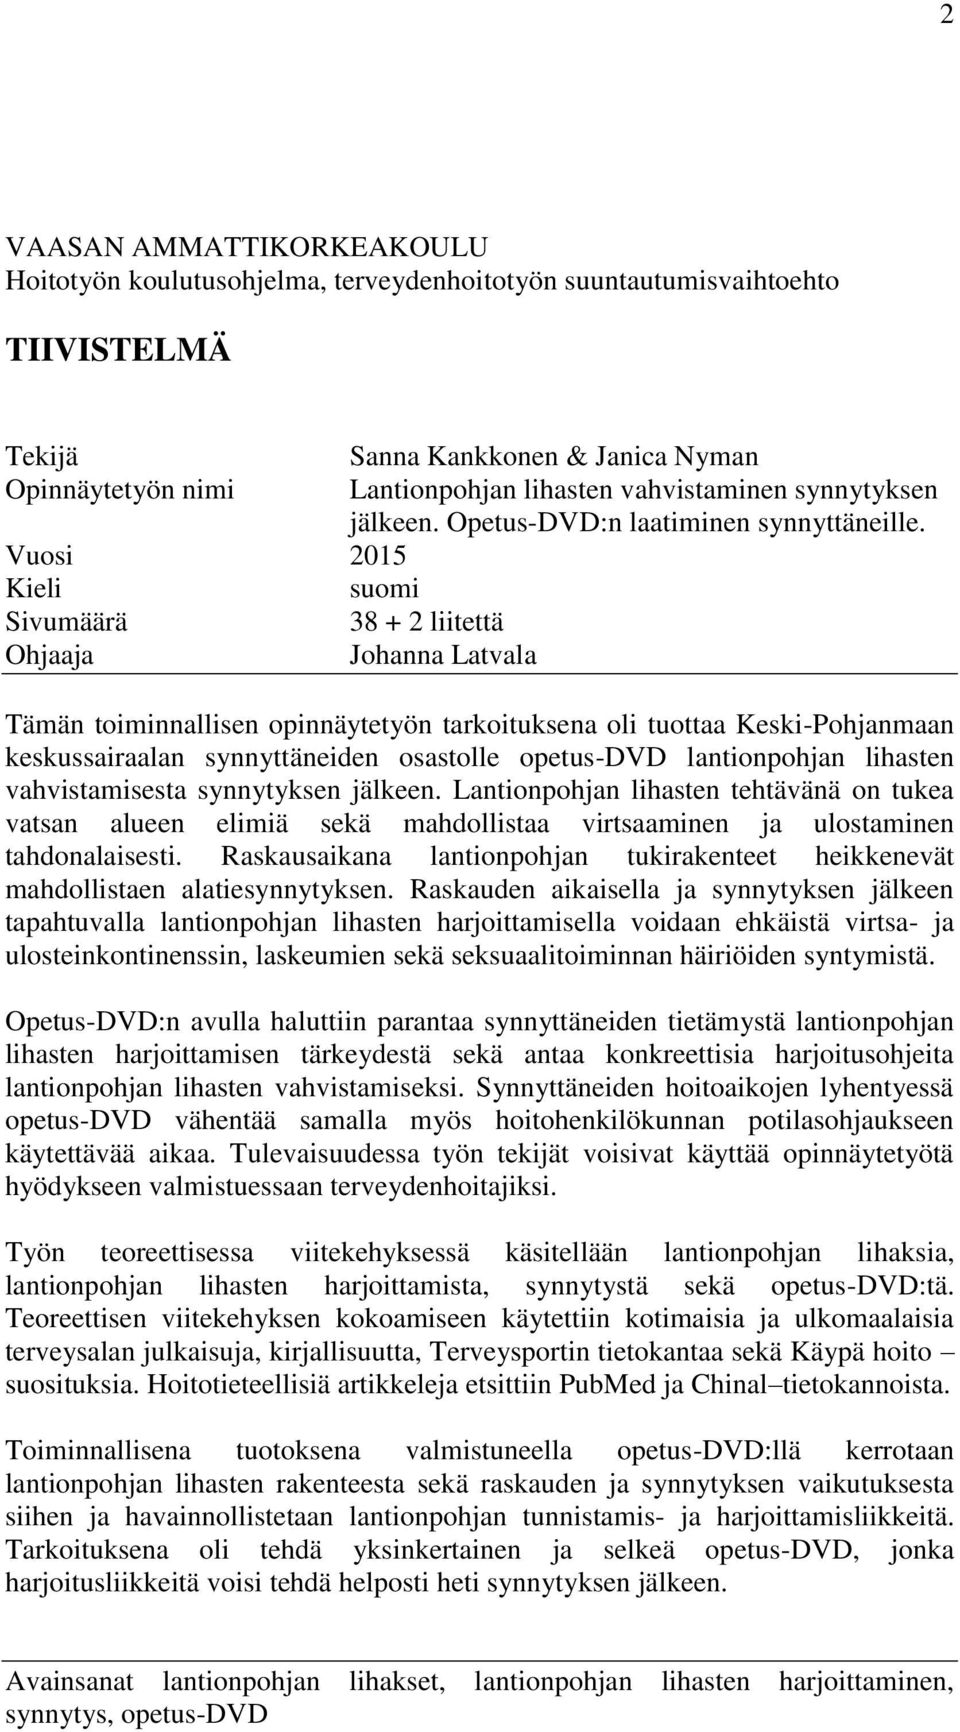 Vuosi 2015 Kieli suomi Sivumäärä 38 + 2 liitettä Ohjaaja Johanna Latvala Tämän toiminnallisen opinnäytetyön tarkoituksena oli tuottaa Keski-Pohjanmaan keskussairaalan synnyttäneiden osastolle